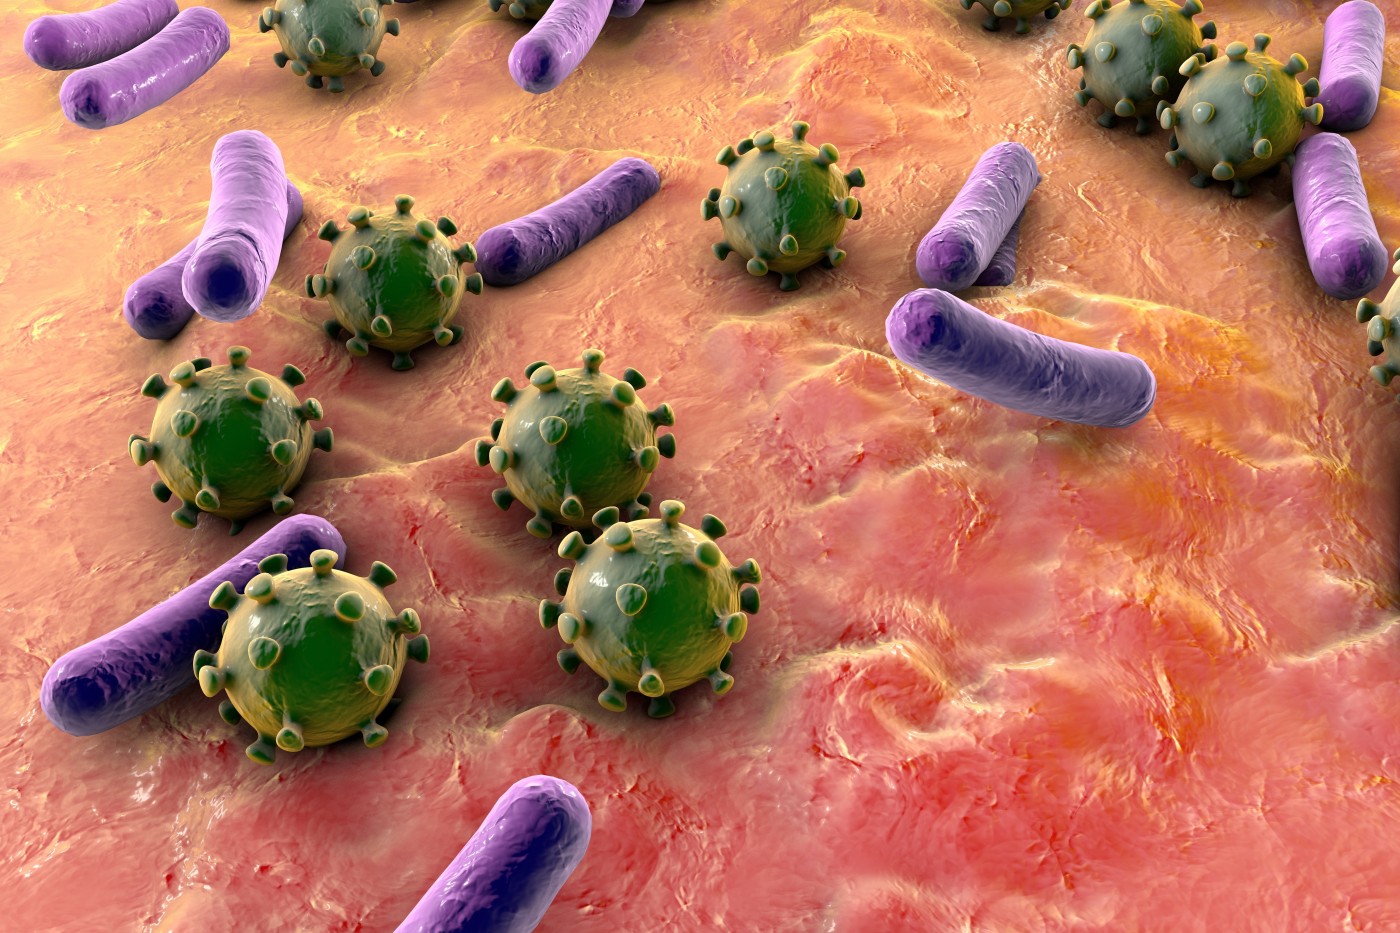 Onderzoekers kijken nader naar secundaire bacteriële longontsteking, wat mogelijk leidt tot nieuwe behandelingen